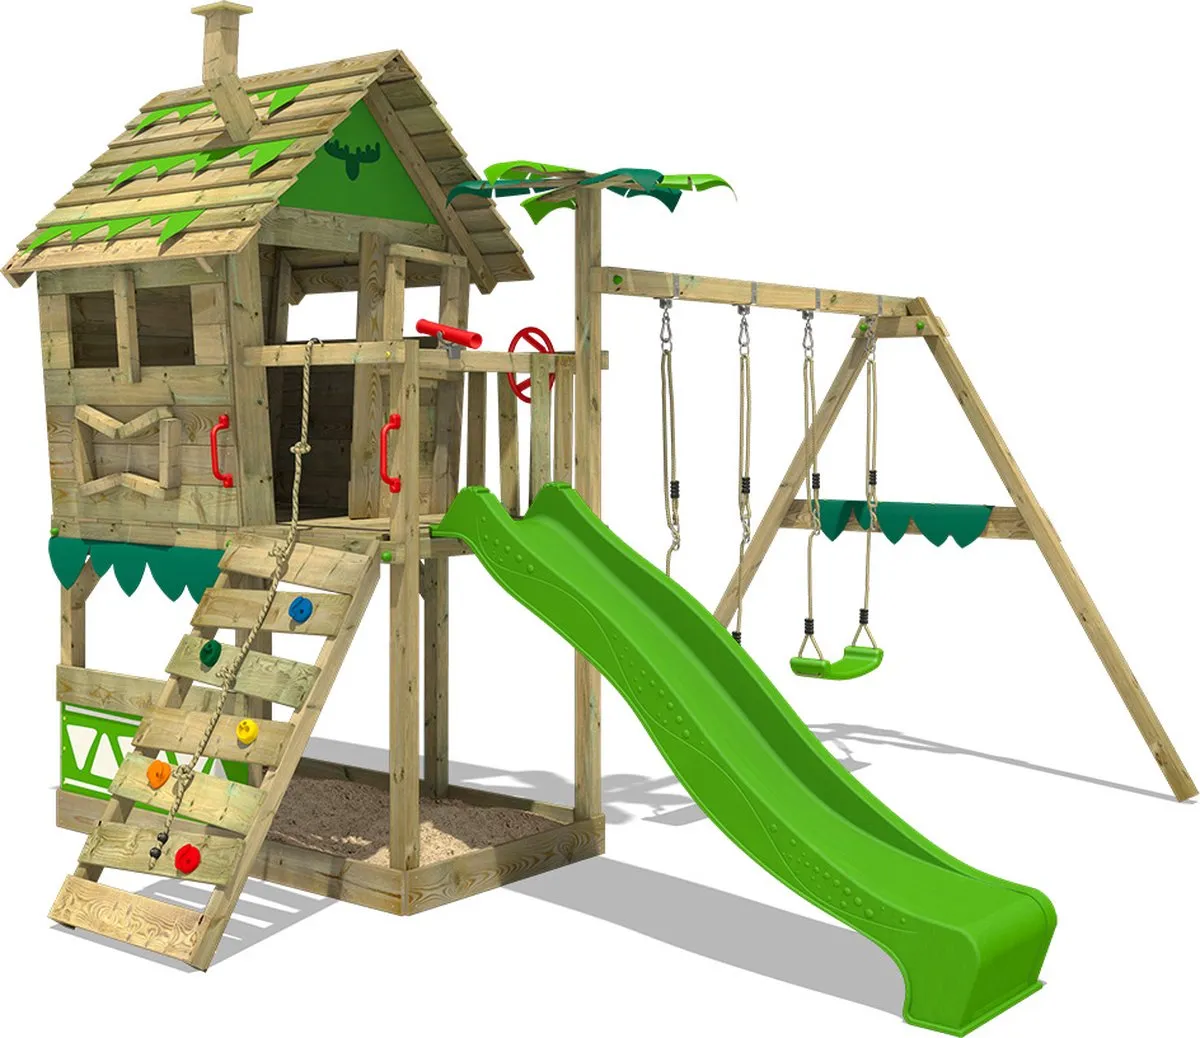 FATMOOSE Speeltoestel JungleJumbo - Speeltoren met appelgroene glijbaan, klimwand, schommel en schommel speelgoed